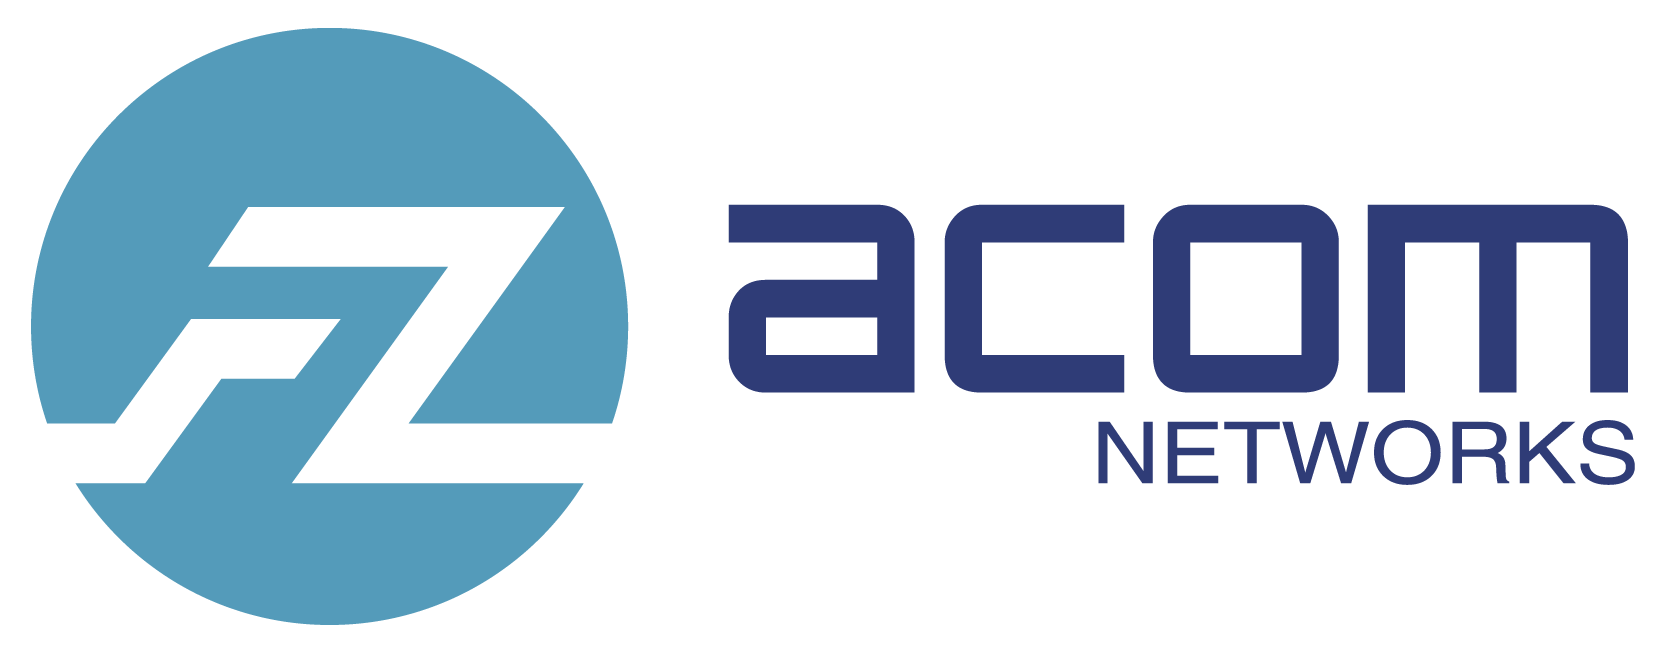 Acom Logo - Acom Networks - Acom Networks